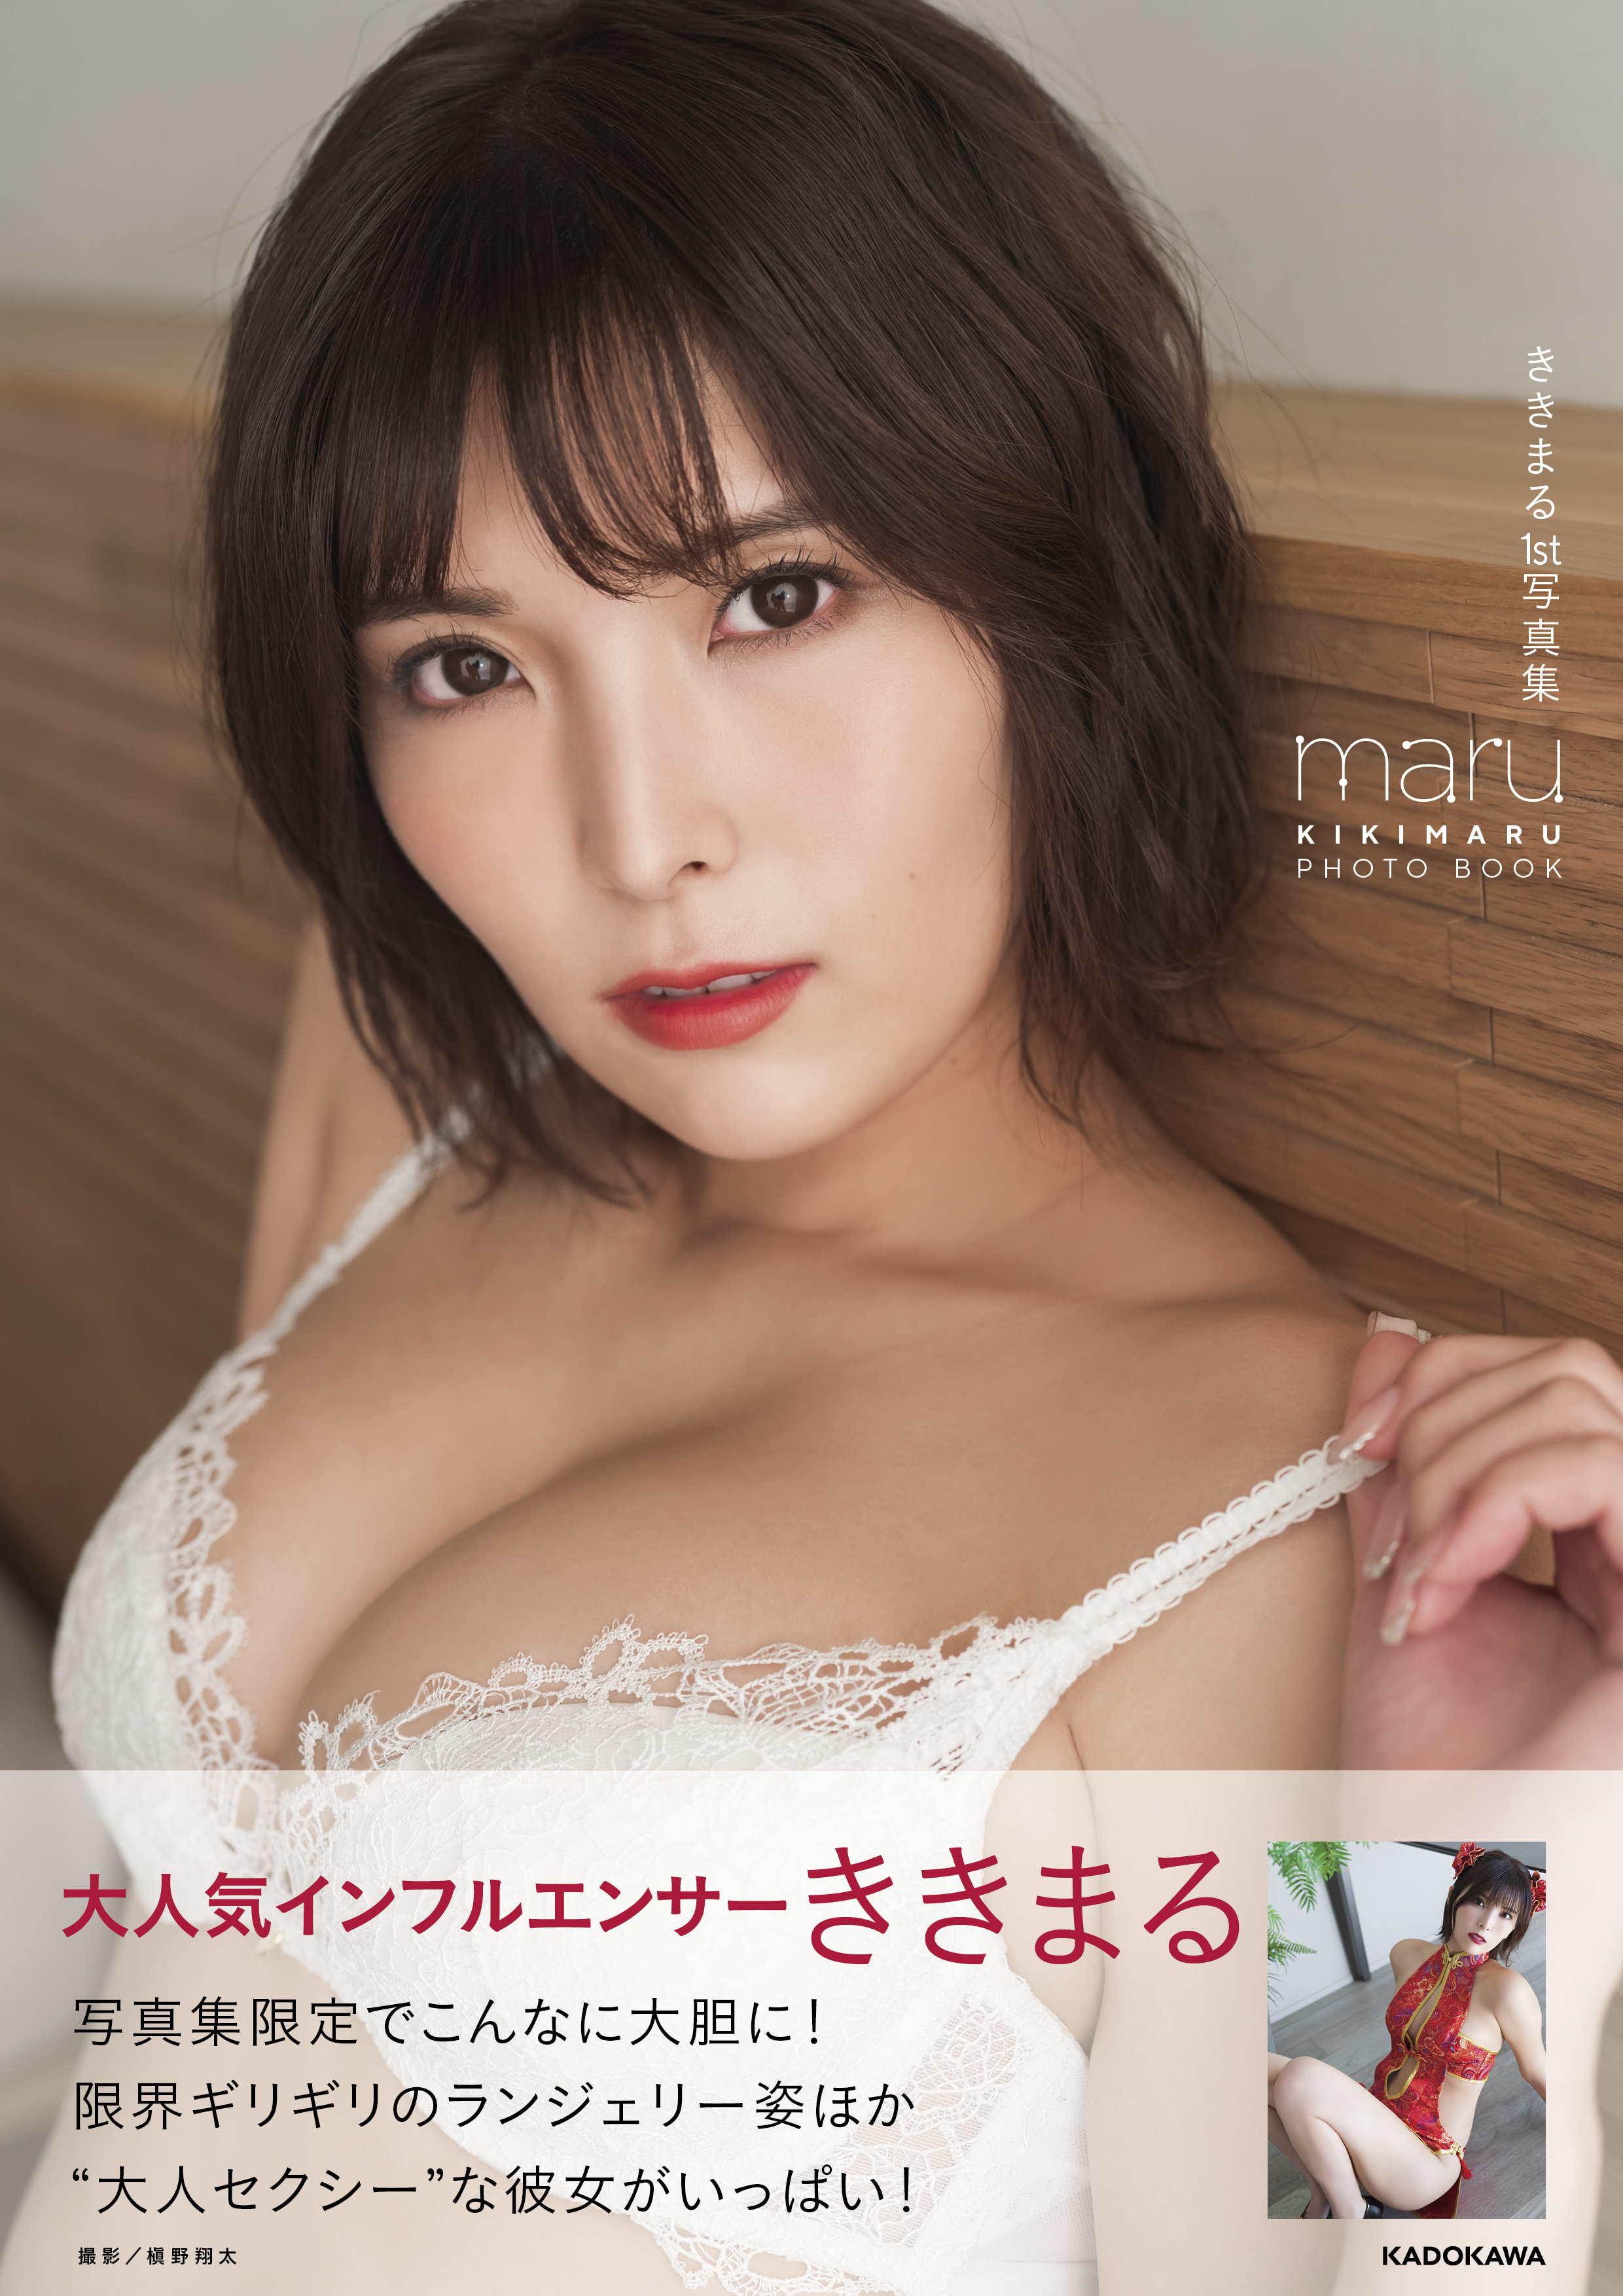 大人気インフルエンサー ききまるが初写真集 ききまる１st写真集 Maru を発売 株式会社kadokawaのプレスリリース